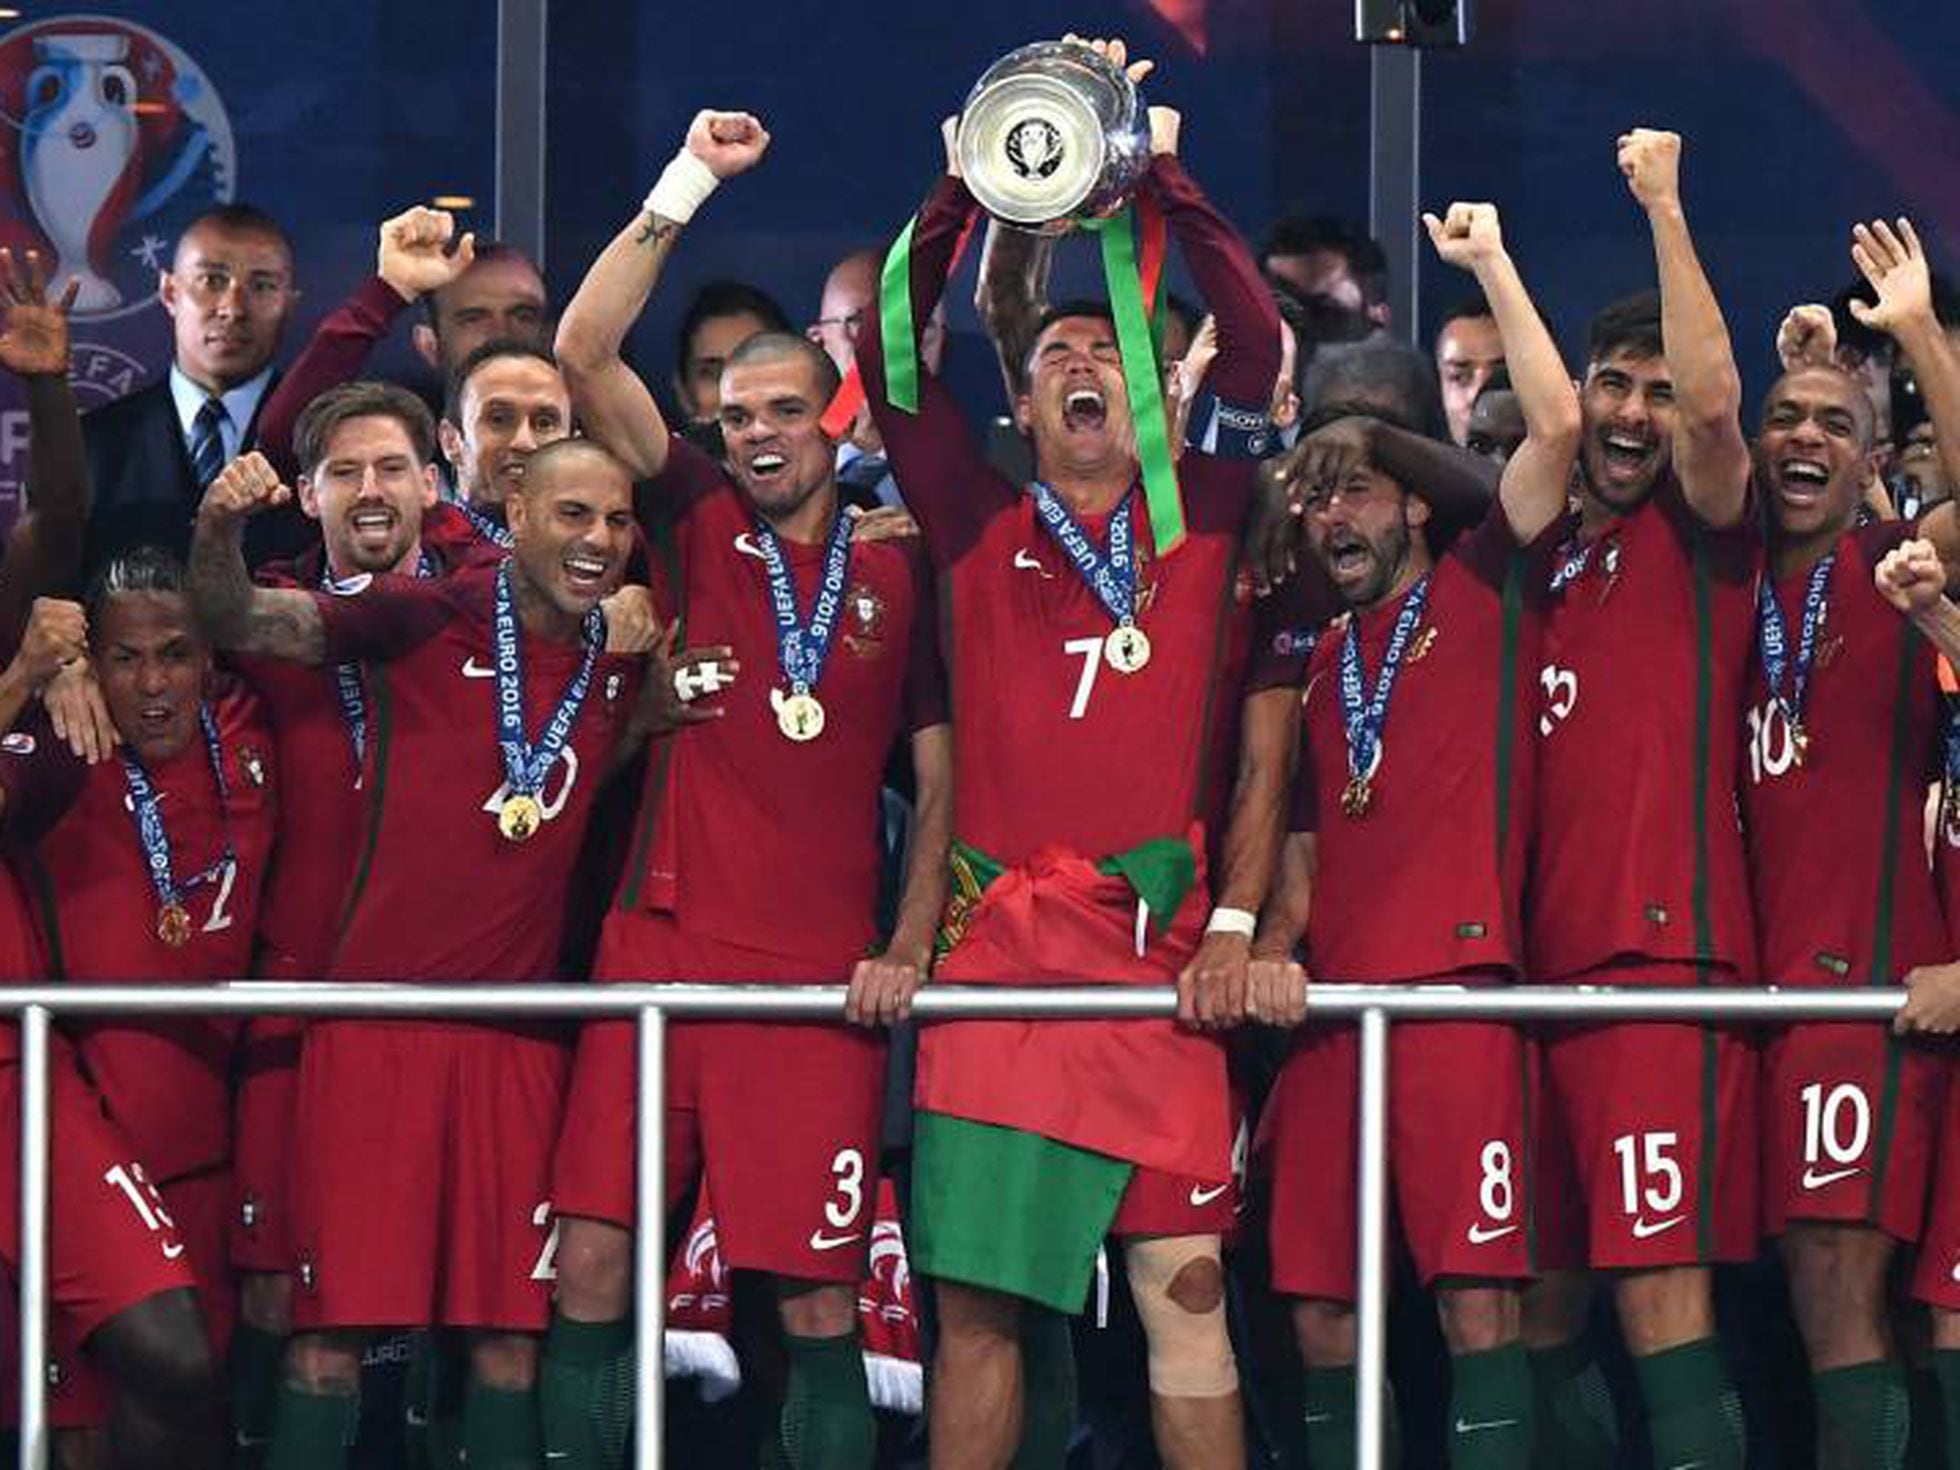 À grande e à francesa. Portugal é campeão da Europa